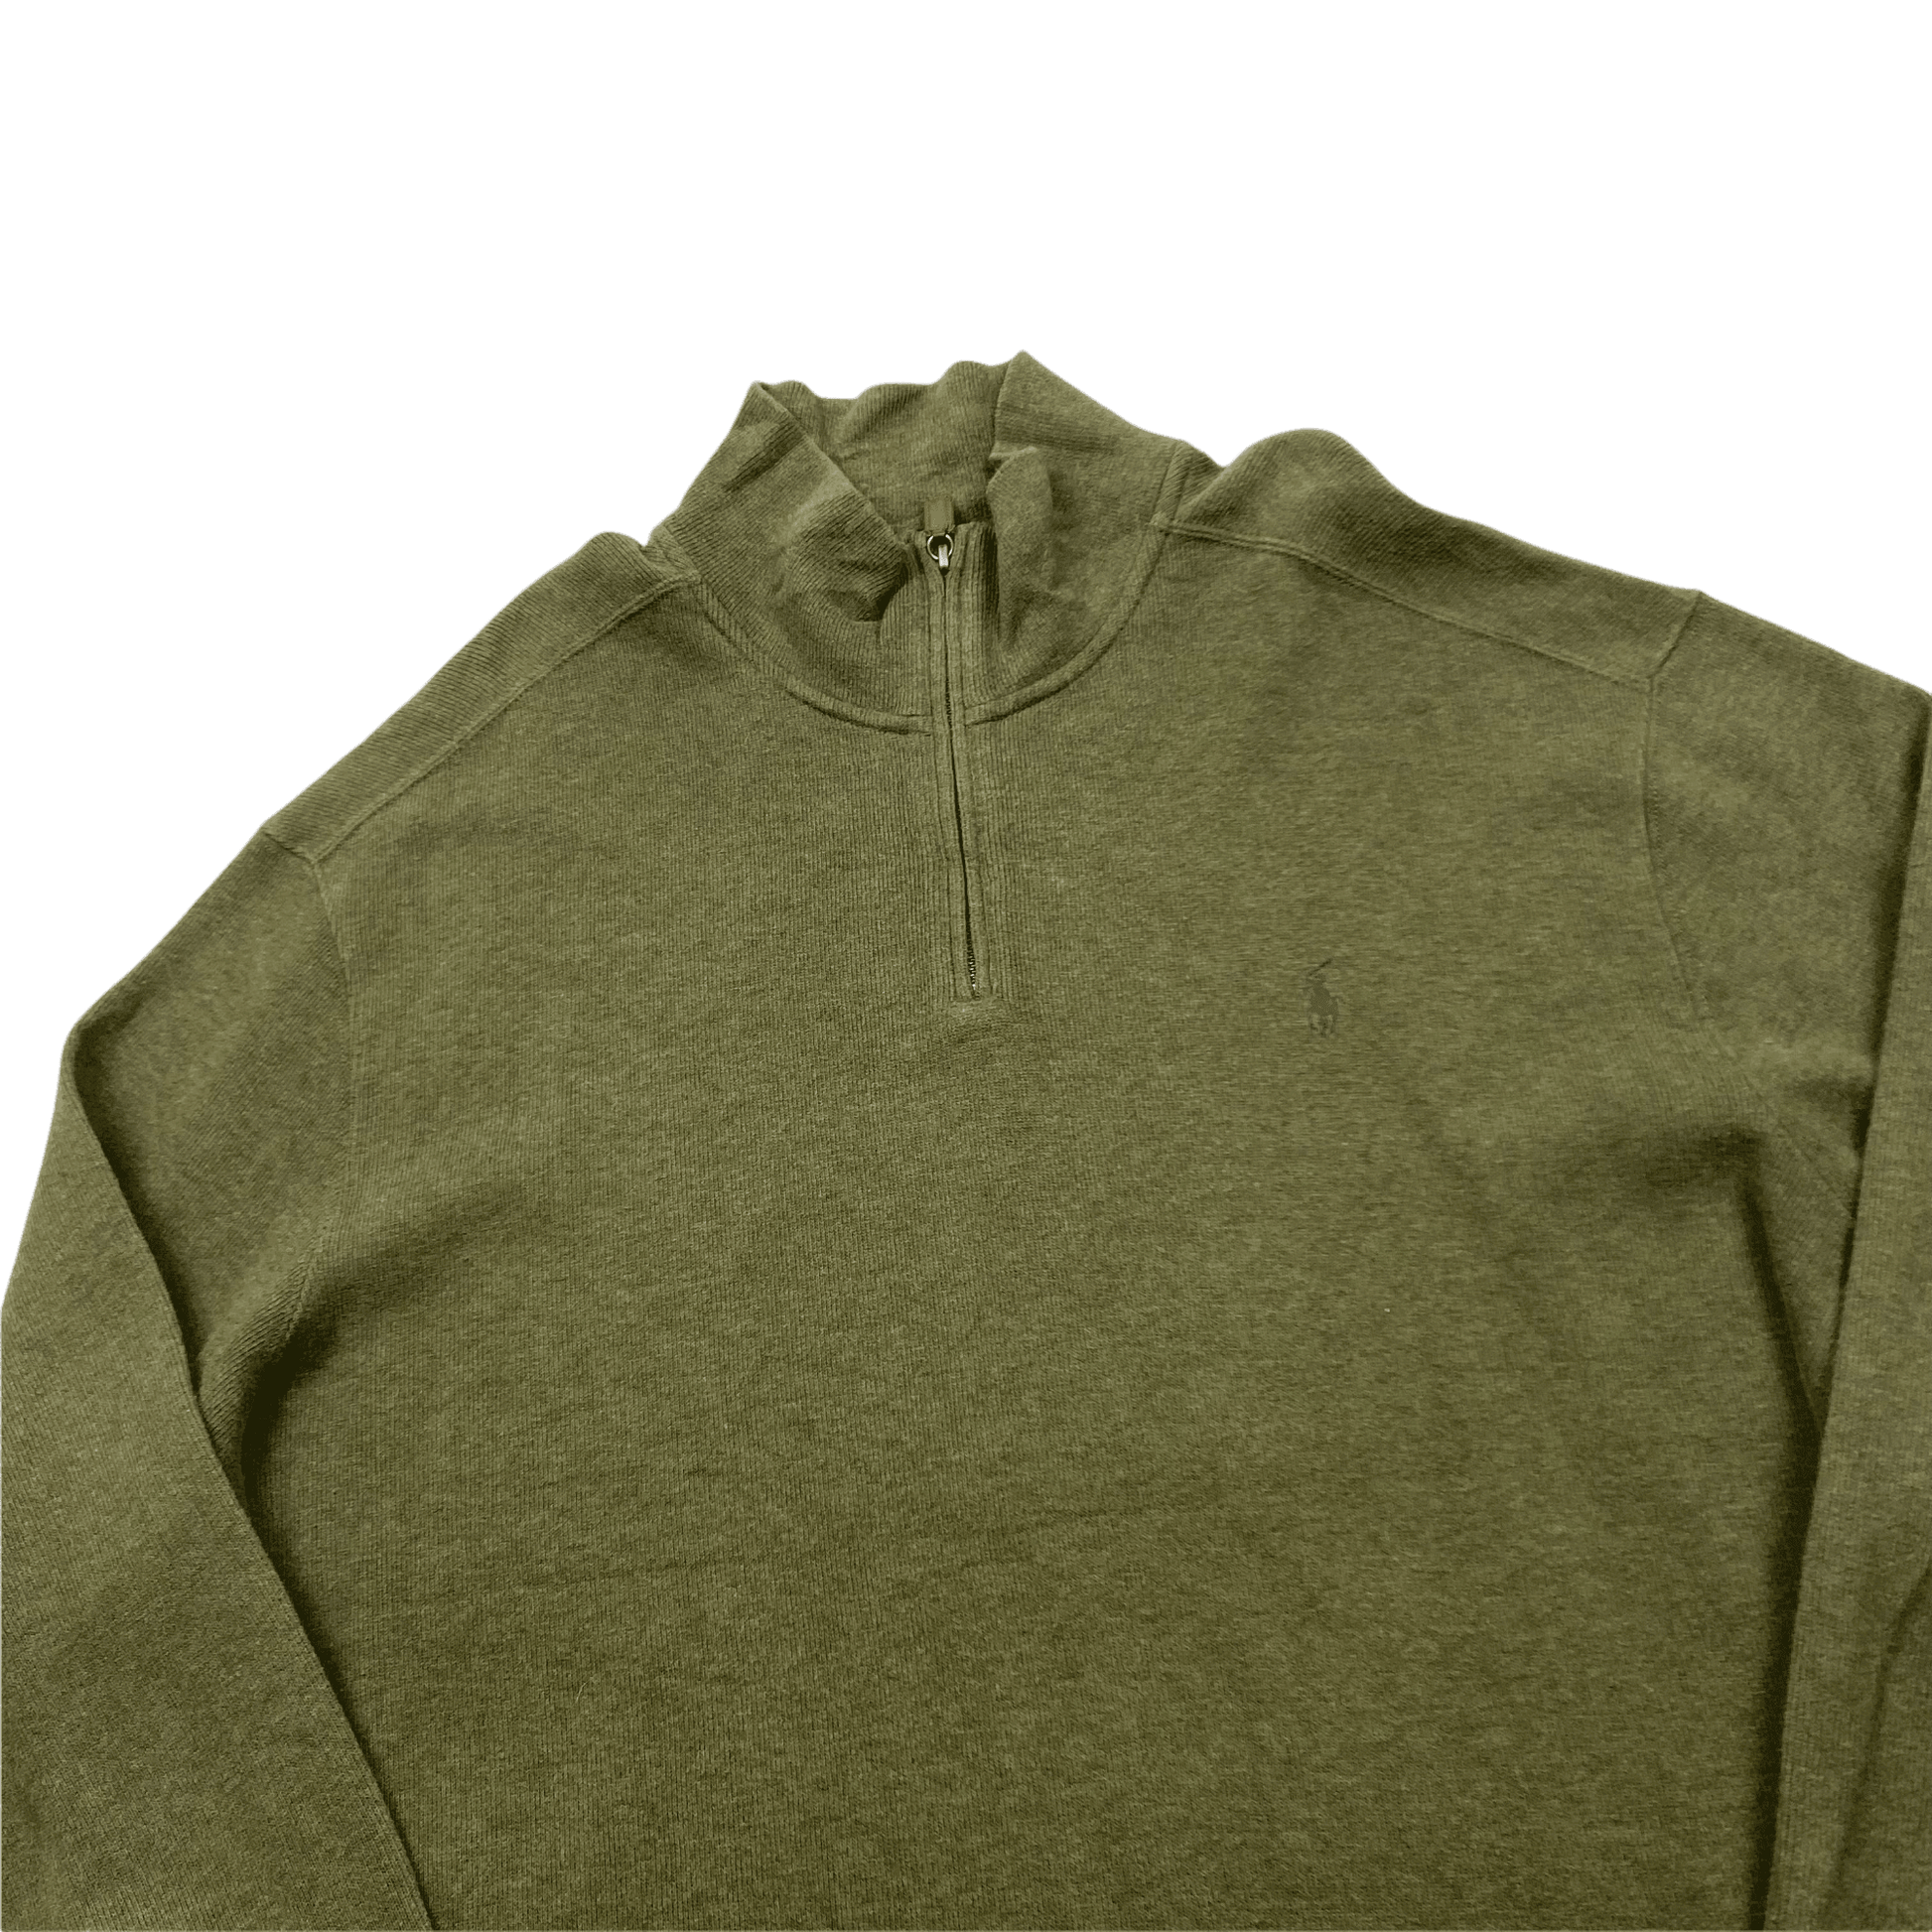 Vintage 90s Green Polo Ralph Lauren Quarter Zip Sweatshirt - XXL - The Streetwear Studio